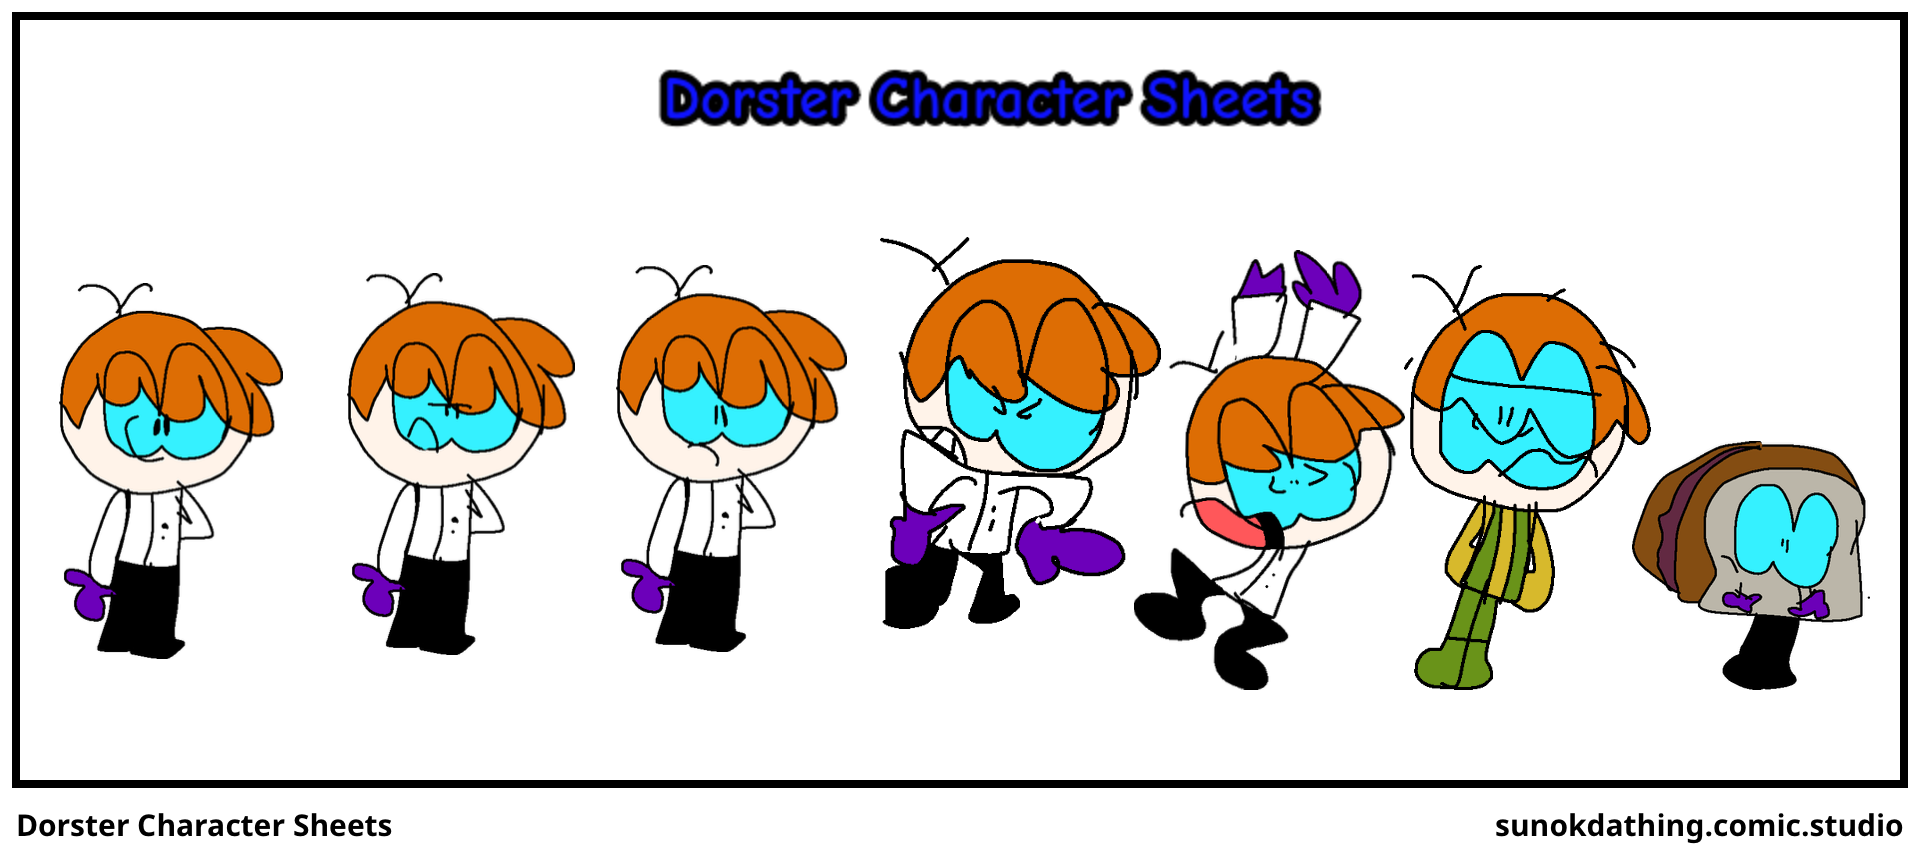 Dorster Character Sheets